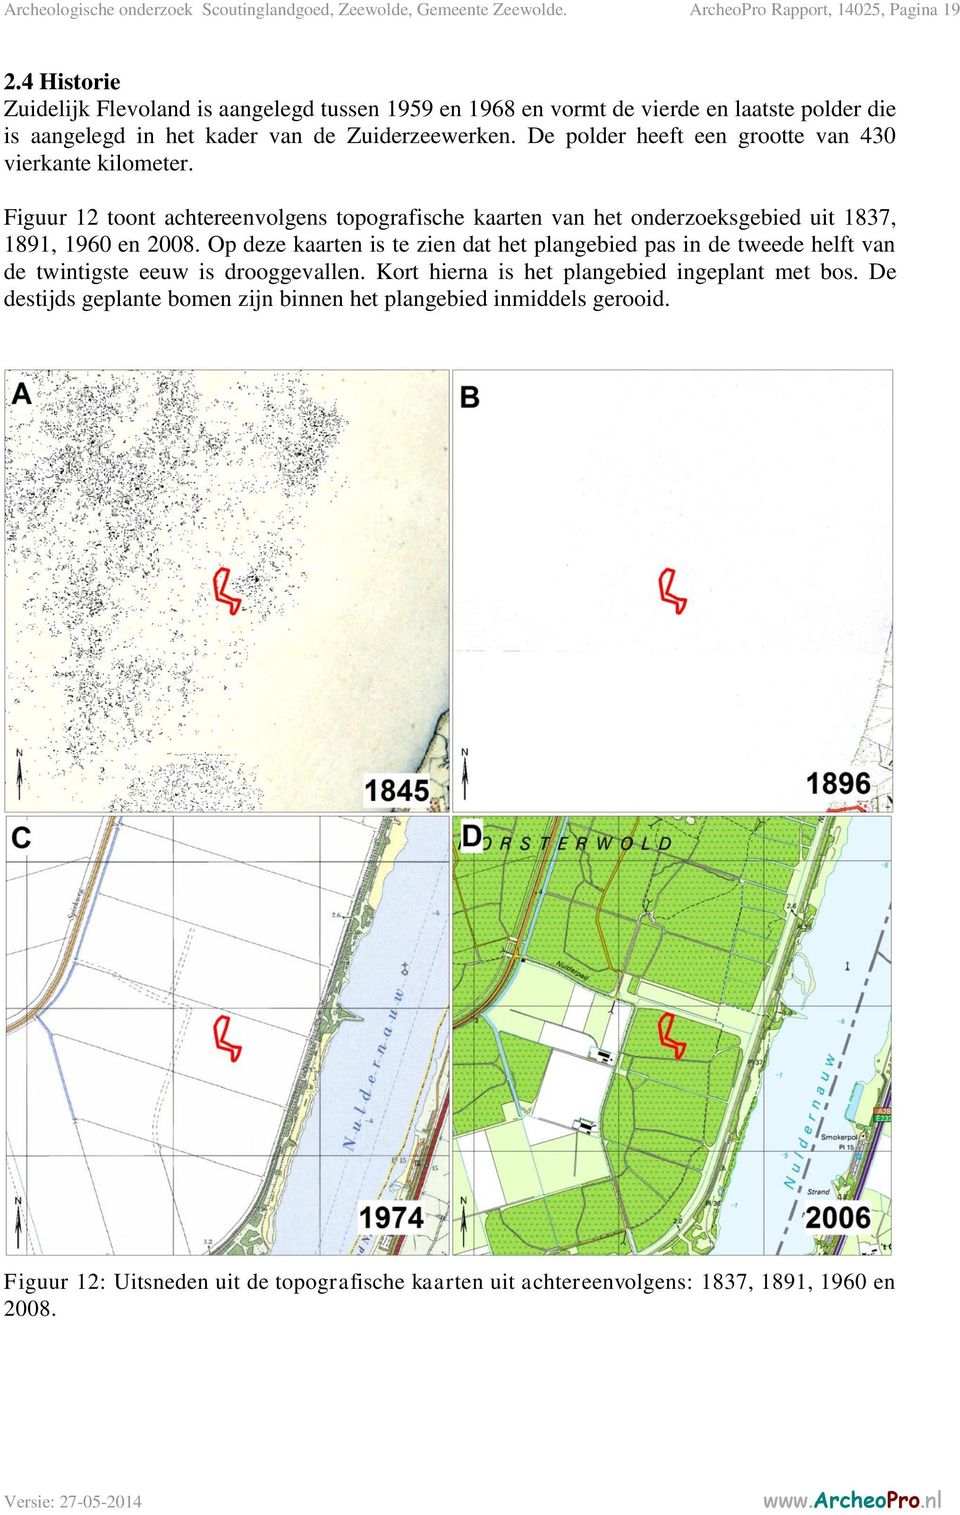 De polder heeft een grootte van 430 vierkante kilometer. Figuur 12 toont achtereenvolgens topografische kaarten van het onderzoeksgebied uit 1837, 1891, 1960 en 2008.